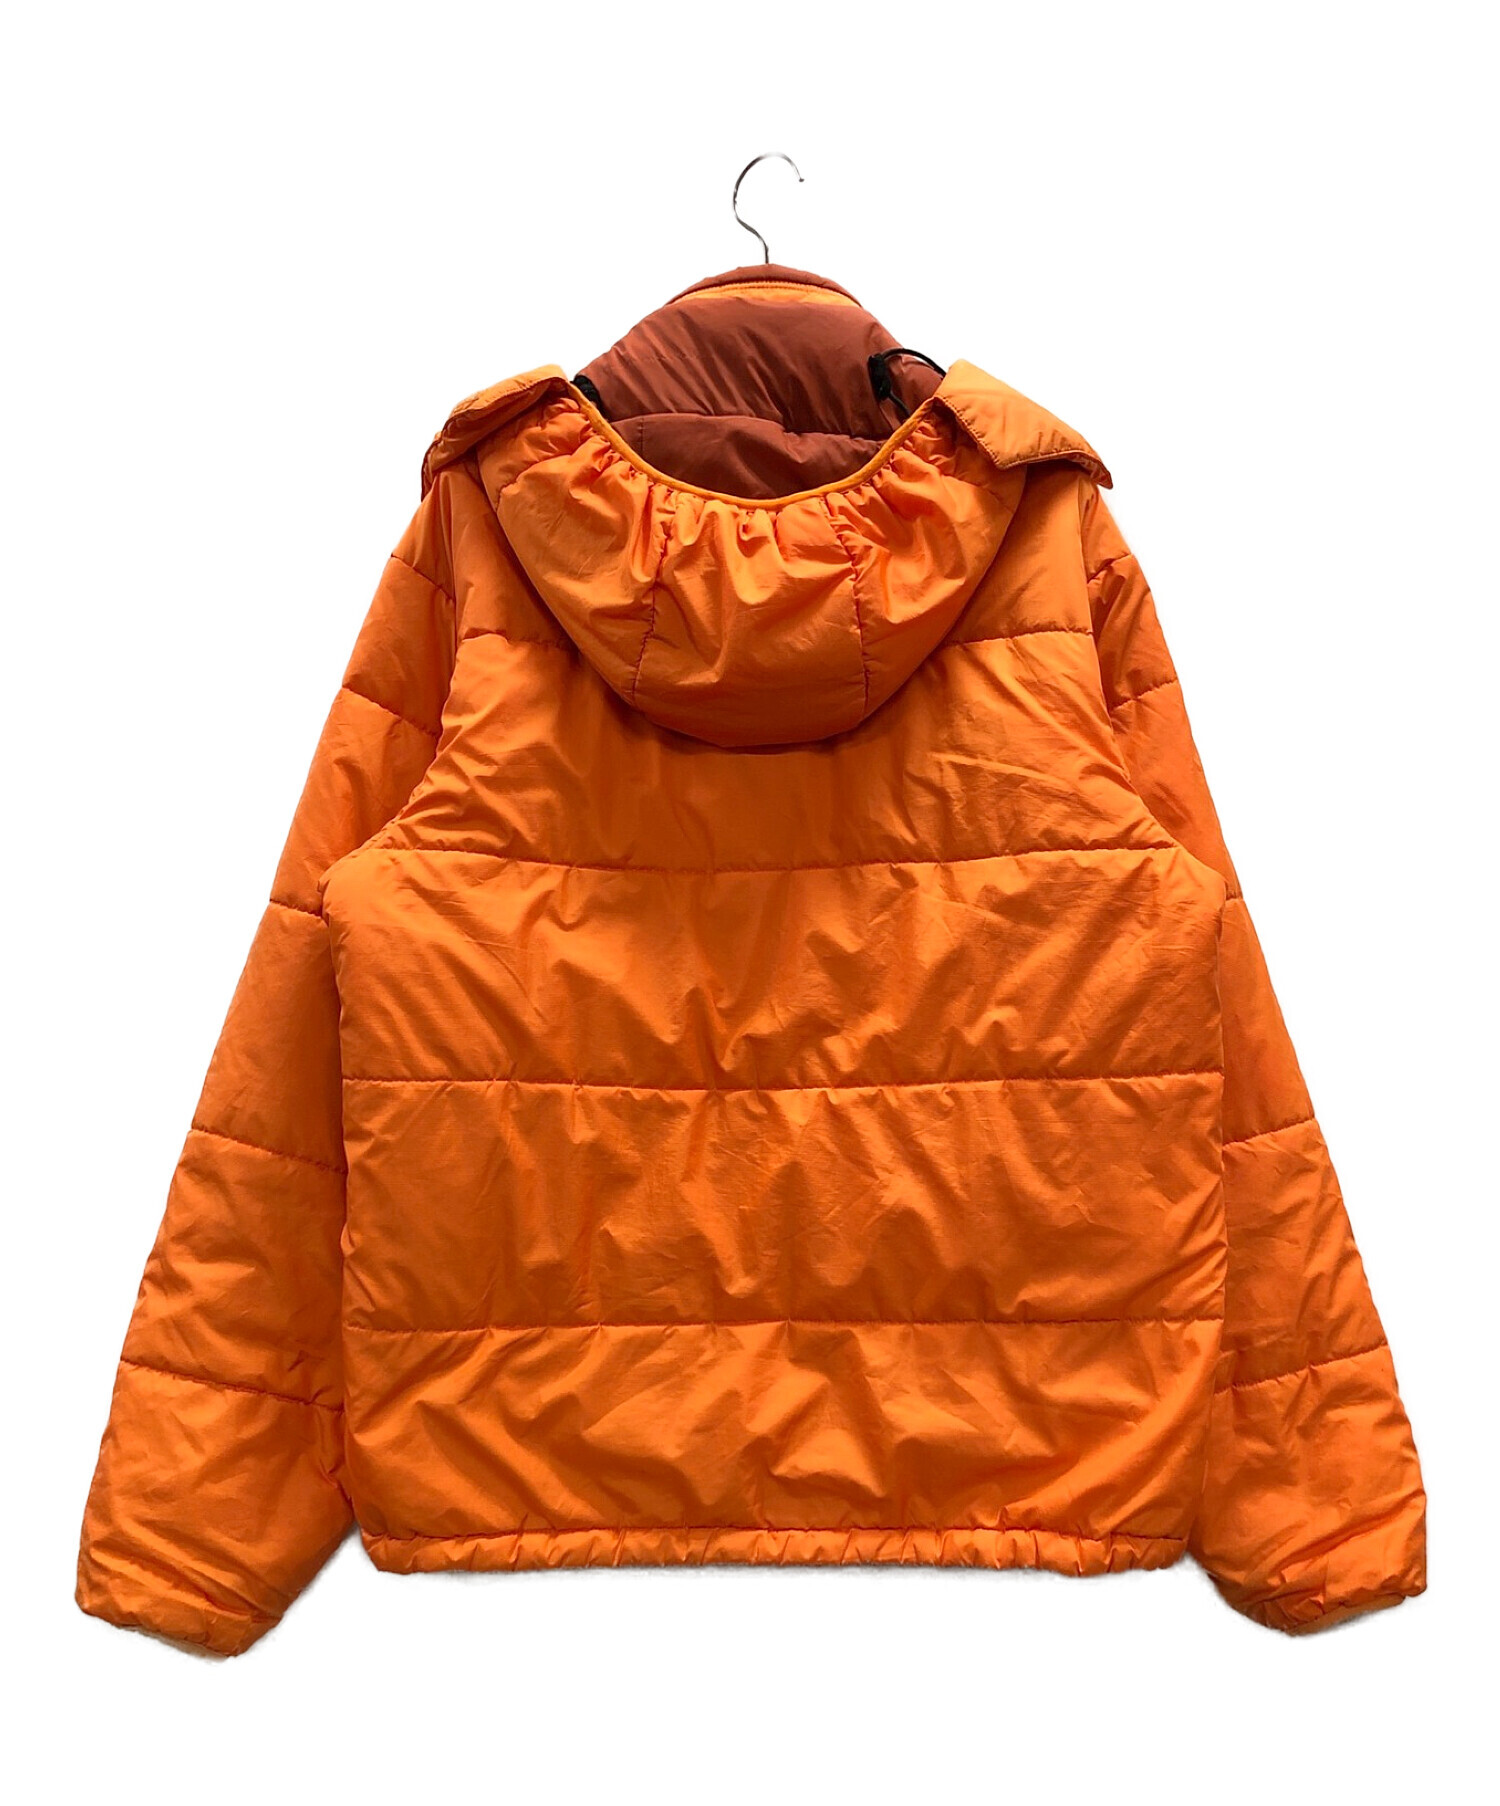 Patagonia (パタゴニア) パフジャケット オレンジ サイズ:L